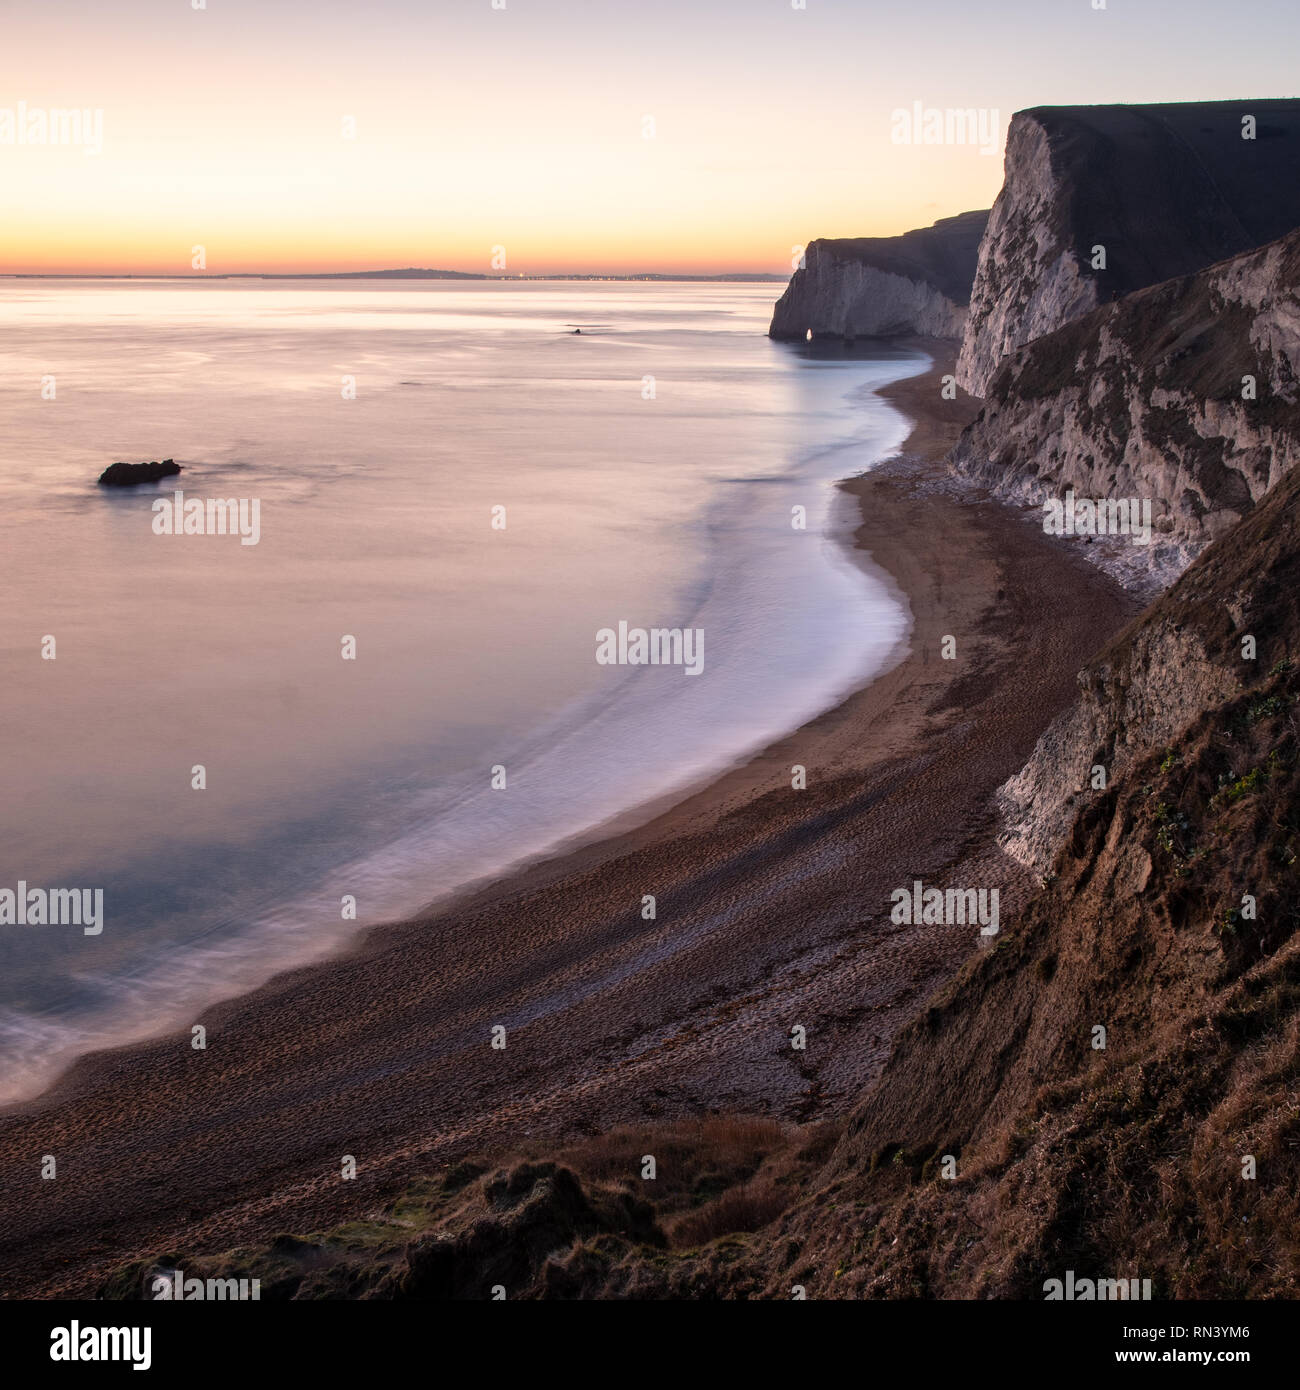 L'incandescence du coucher du soleil illumine le ciel derrière la tête de chauve-souris et Weymouth Bay sur la côte jurassique du Dorset. Banque D'Images